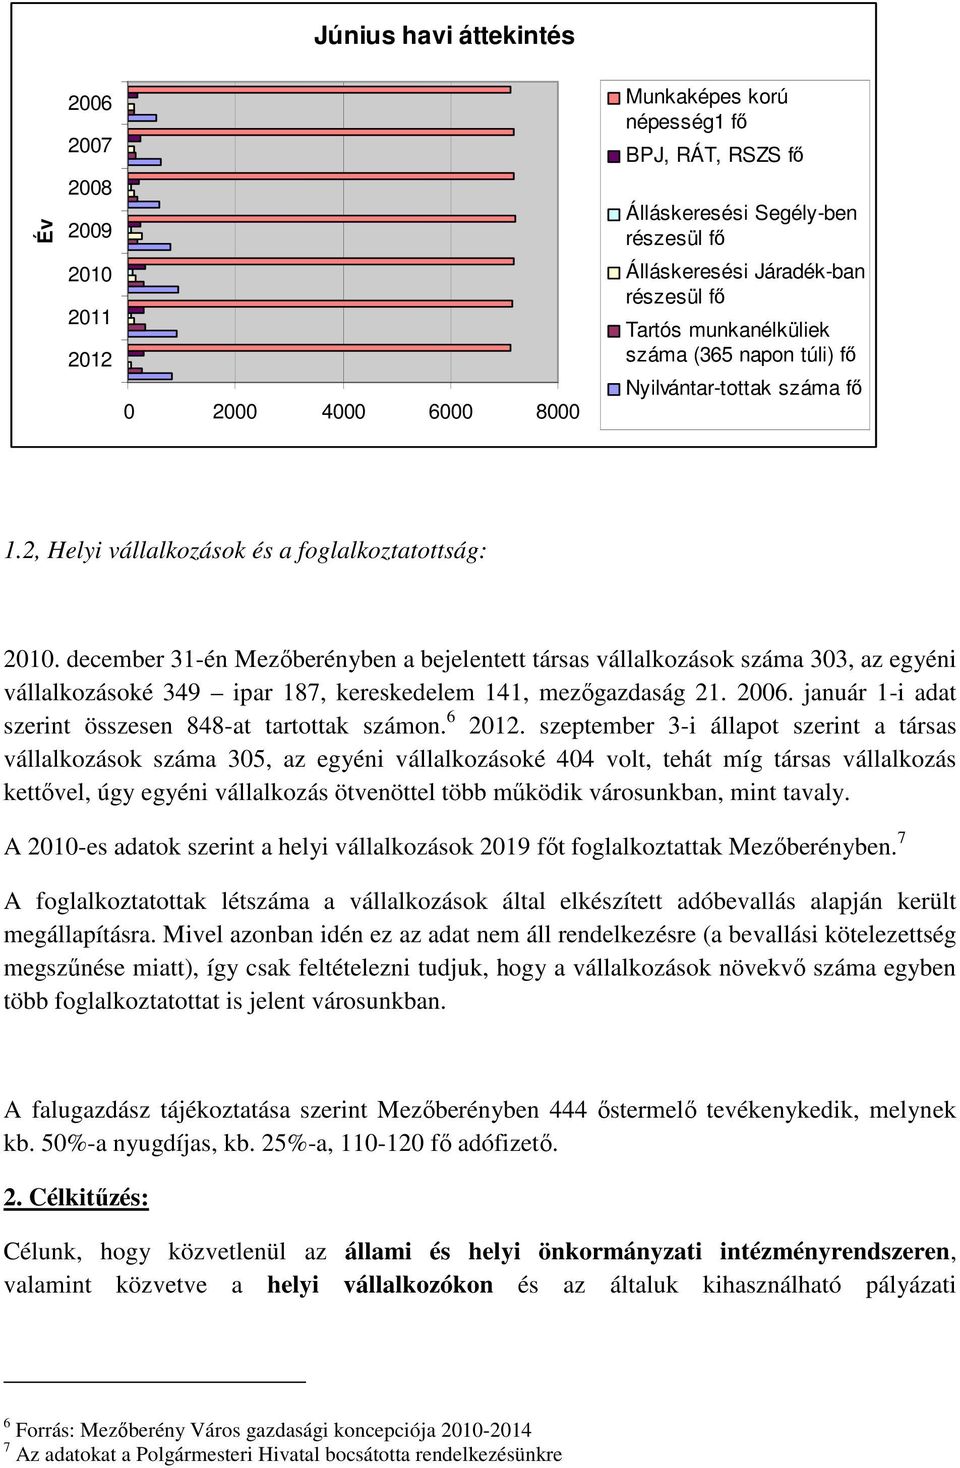 december 31-én Mezıberényben a bejelentett társas vállalkozások száma 303, az egyéni vállalkozásoké 349 ipar 187, kereskedelem 141, mezıgazdaság 21. 2006.